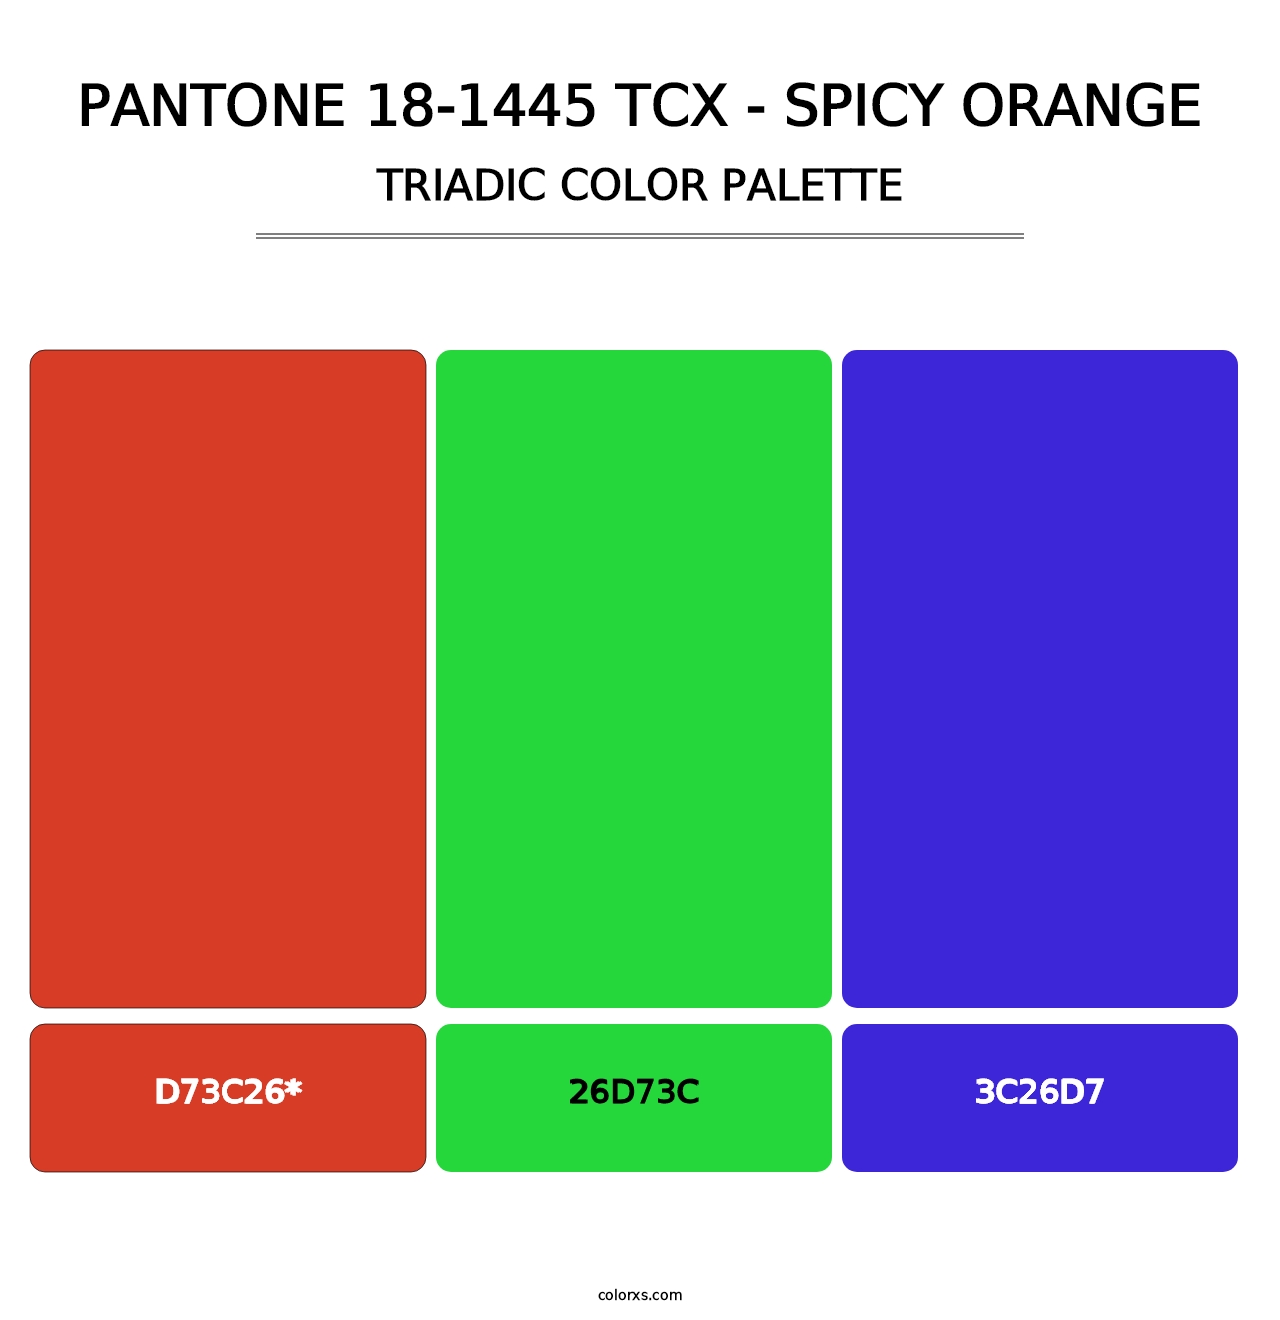 PANTONE 18-1445 TCX - Spicy Orange - Triadic Color Palette